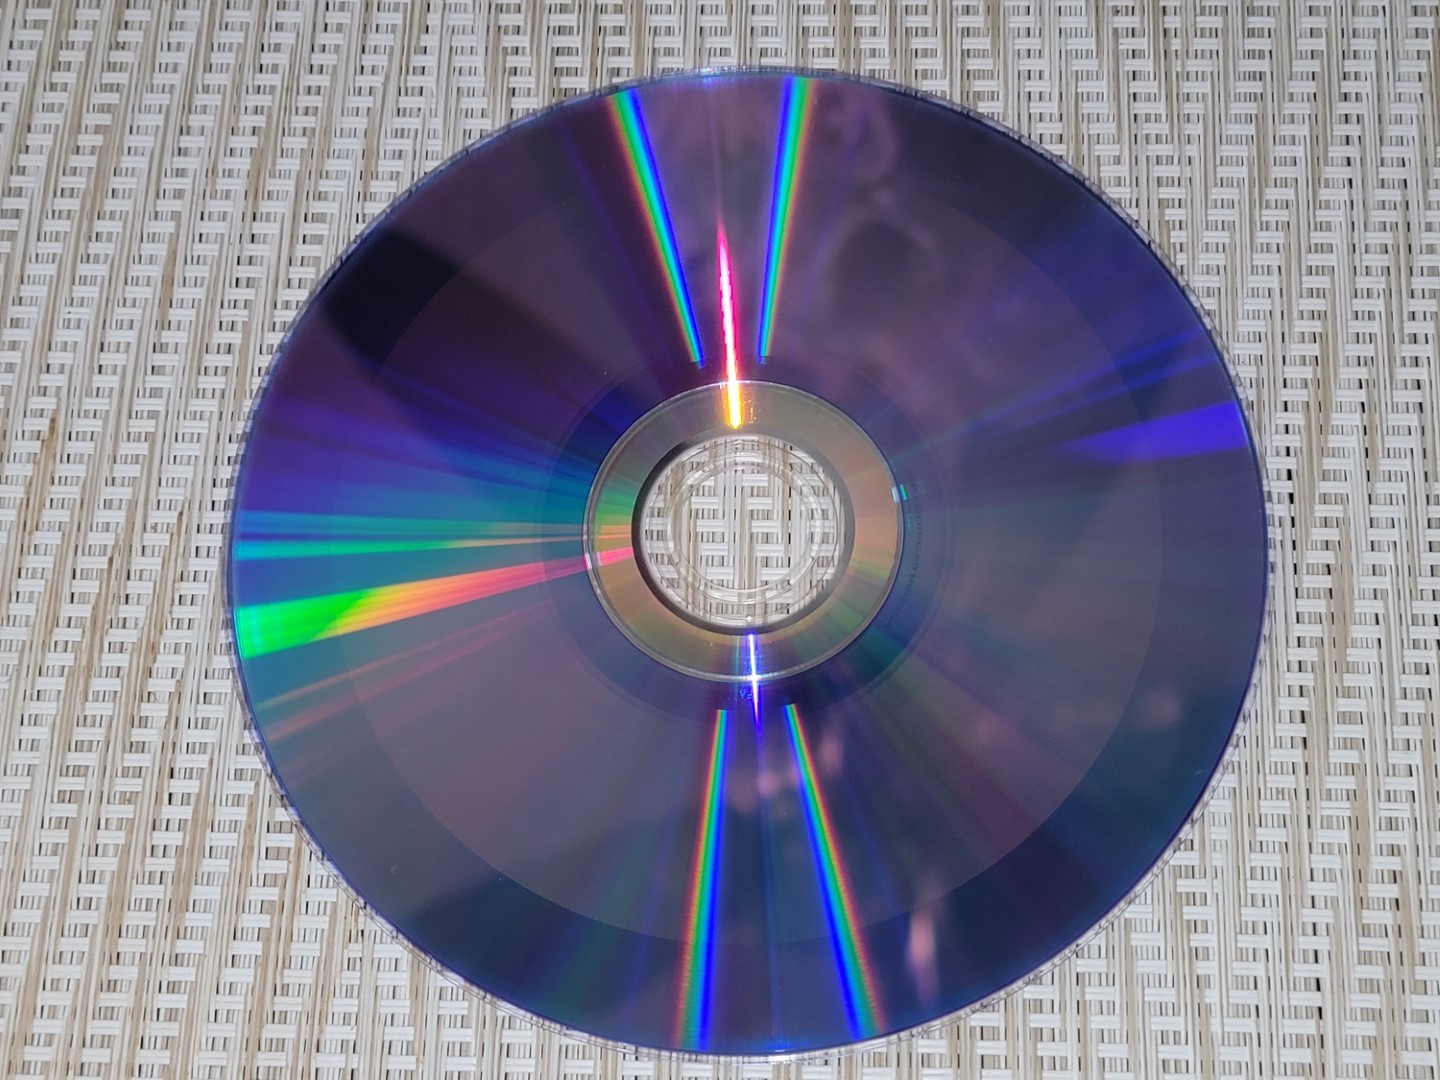 PlexDisc DVD+R Burned in LG BP60NB10